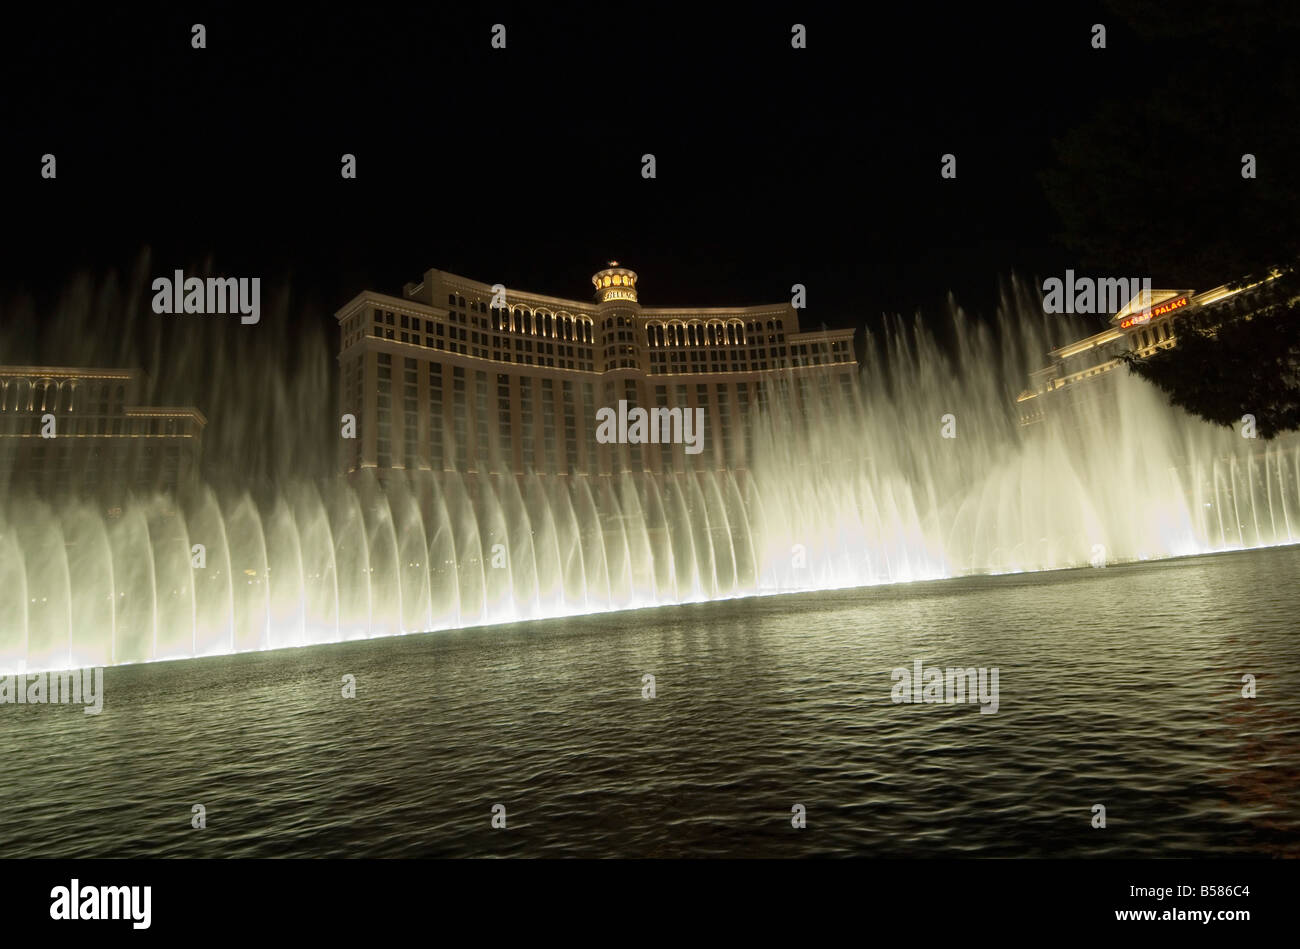 L'hôtel Bellagio de nuit avec ses célèbres fontaines, le Strip (Las Vegas Boulevard), Las Vegas, Nevada Banque D'Images